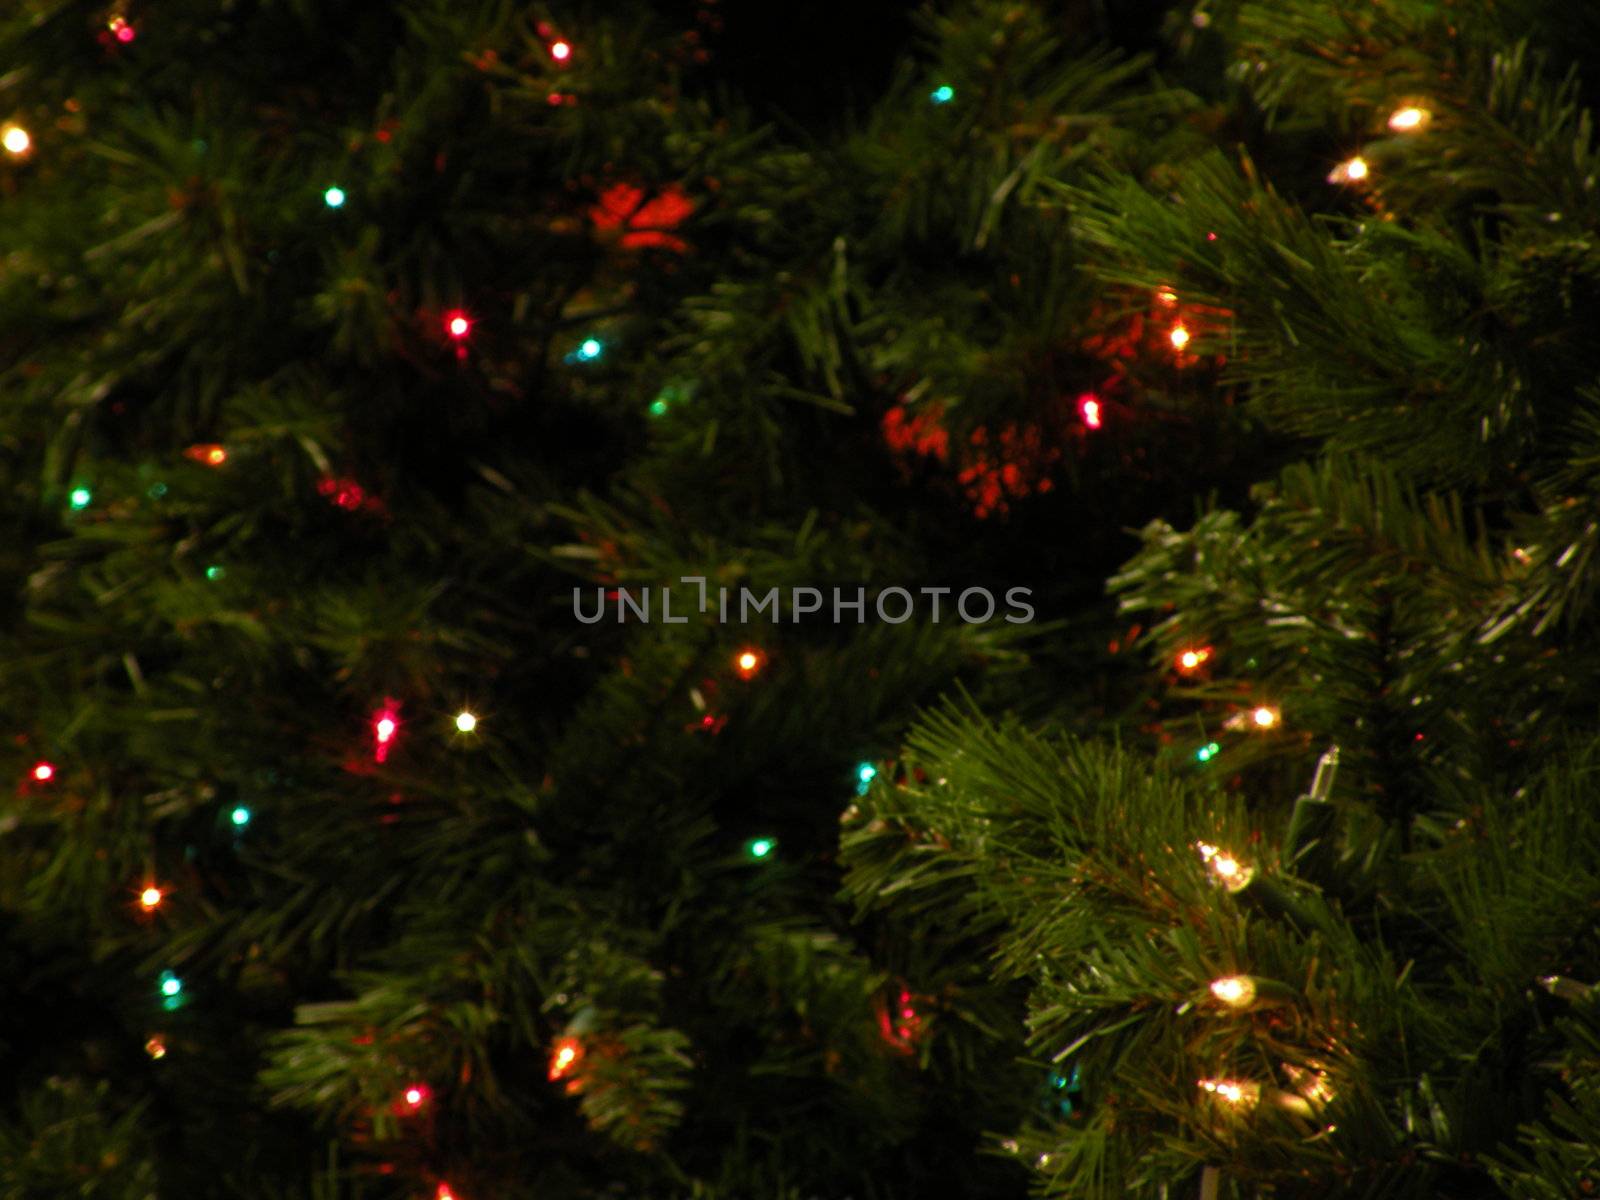 Christmas lights hanging on a tree display